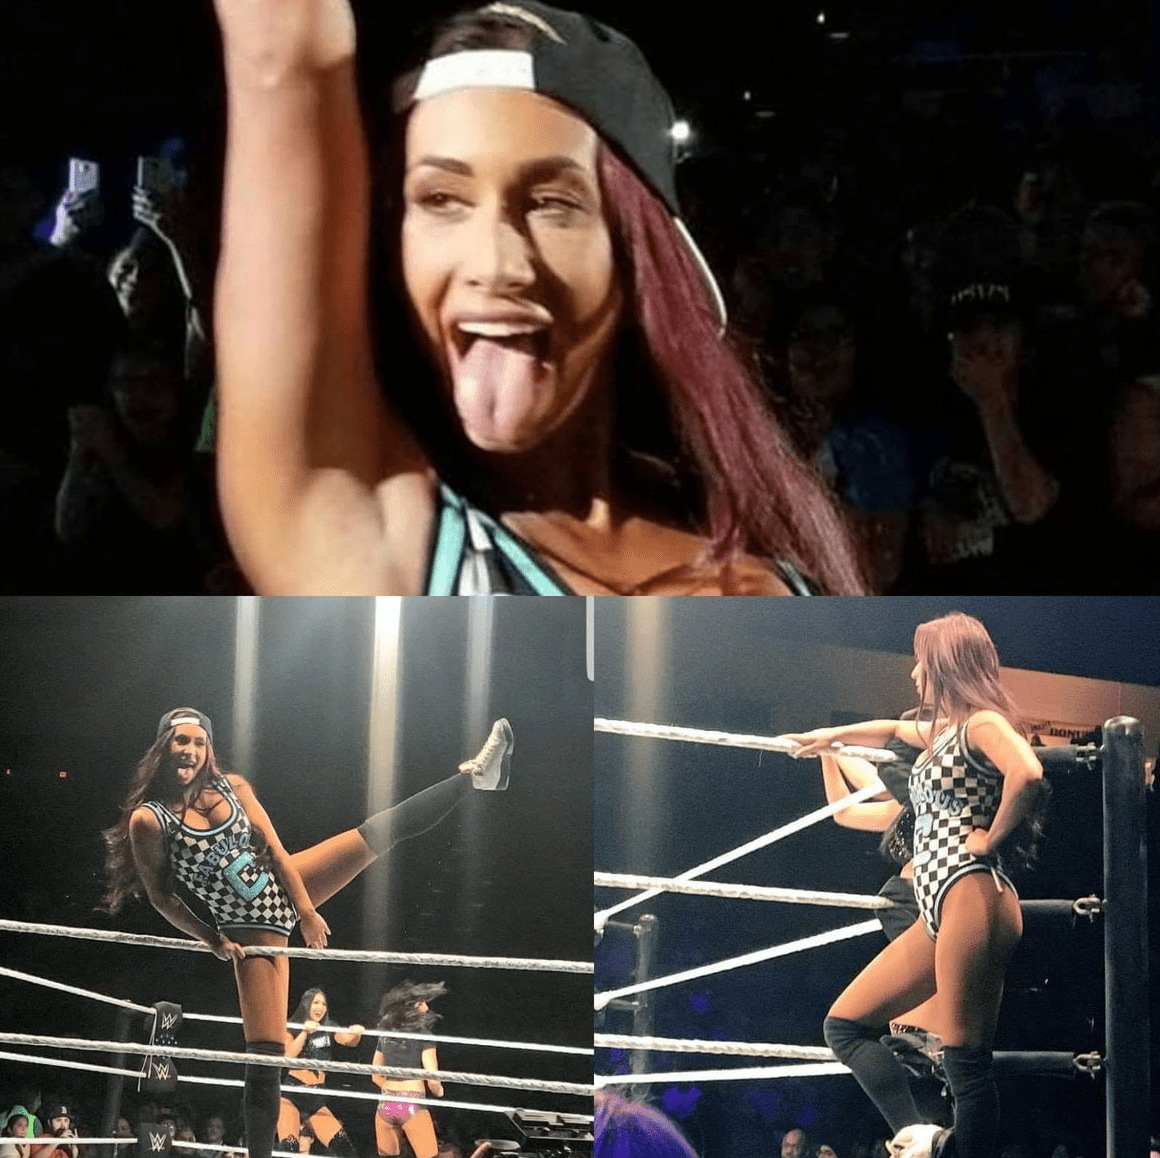 Carmella new hair color brunette 2018 WWE